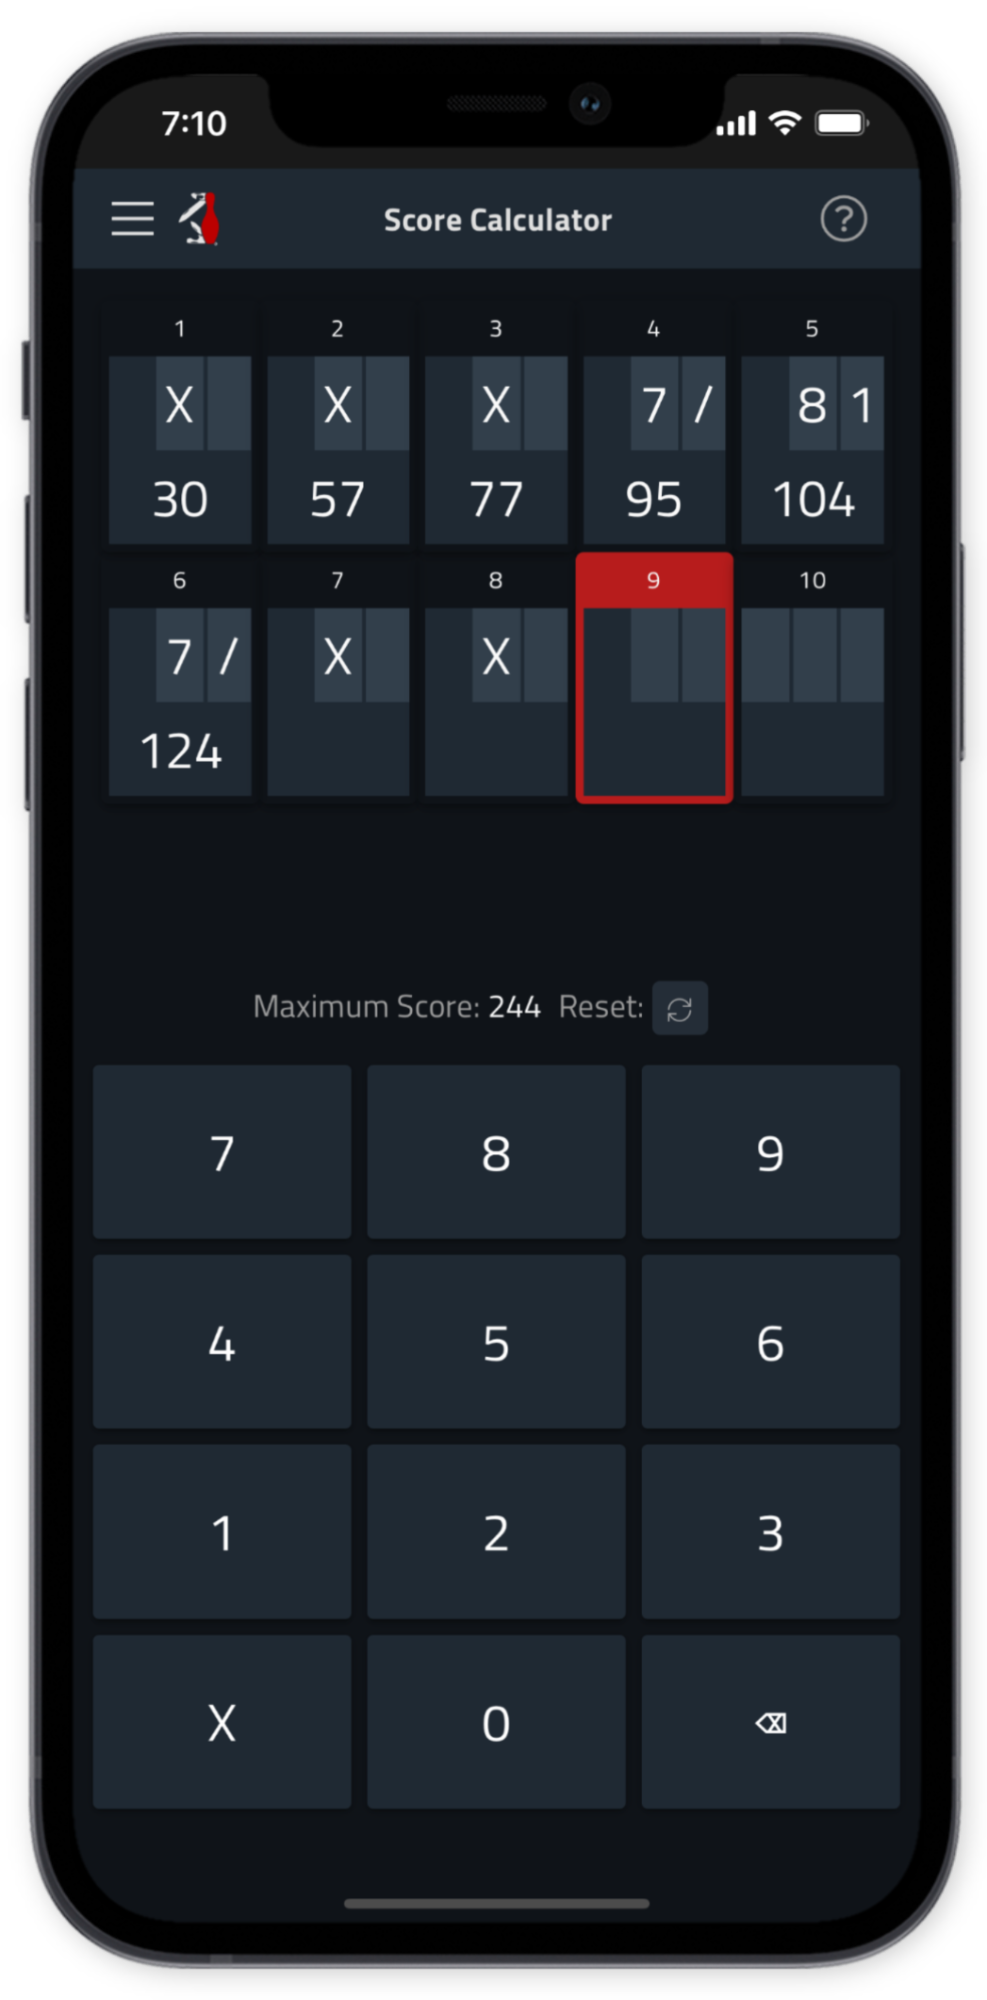 Tenpin Bowling Score Calculator